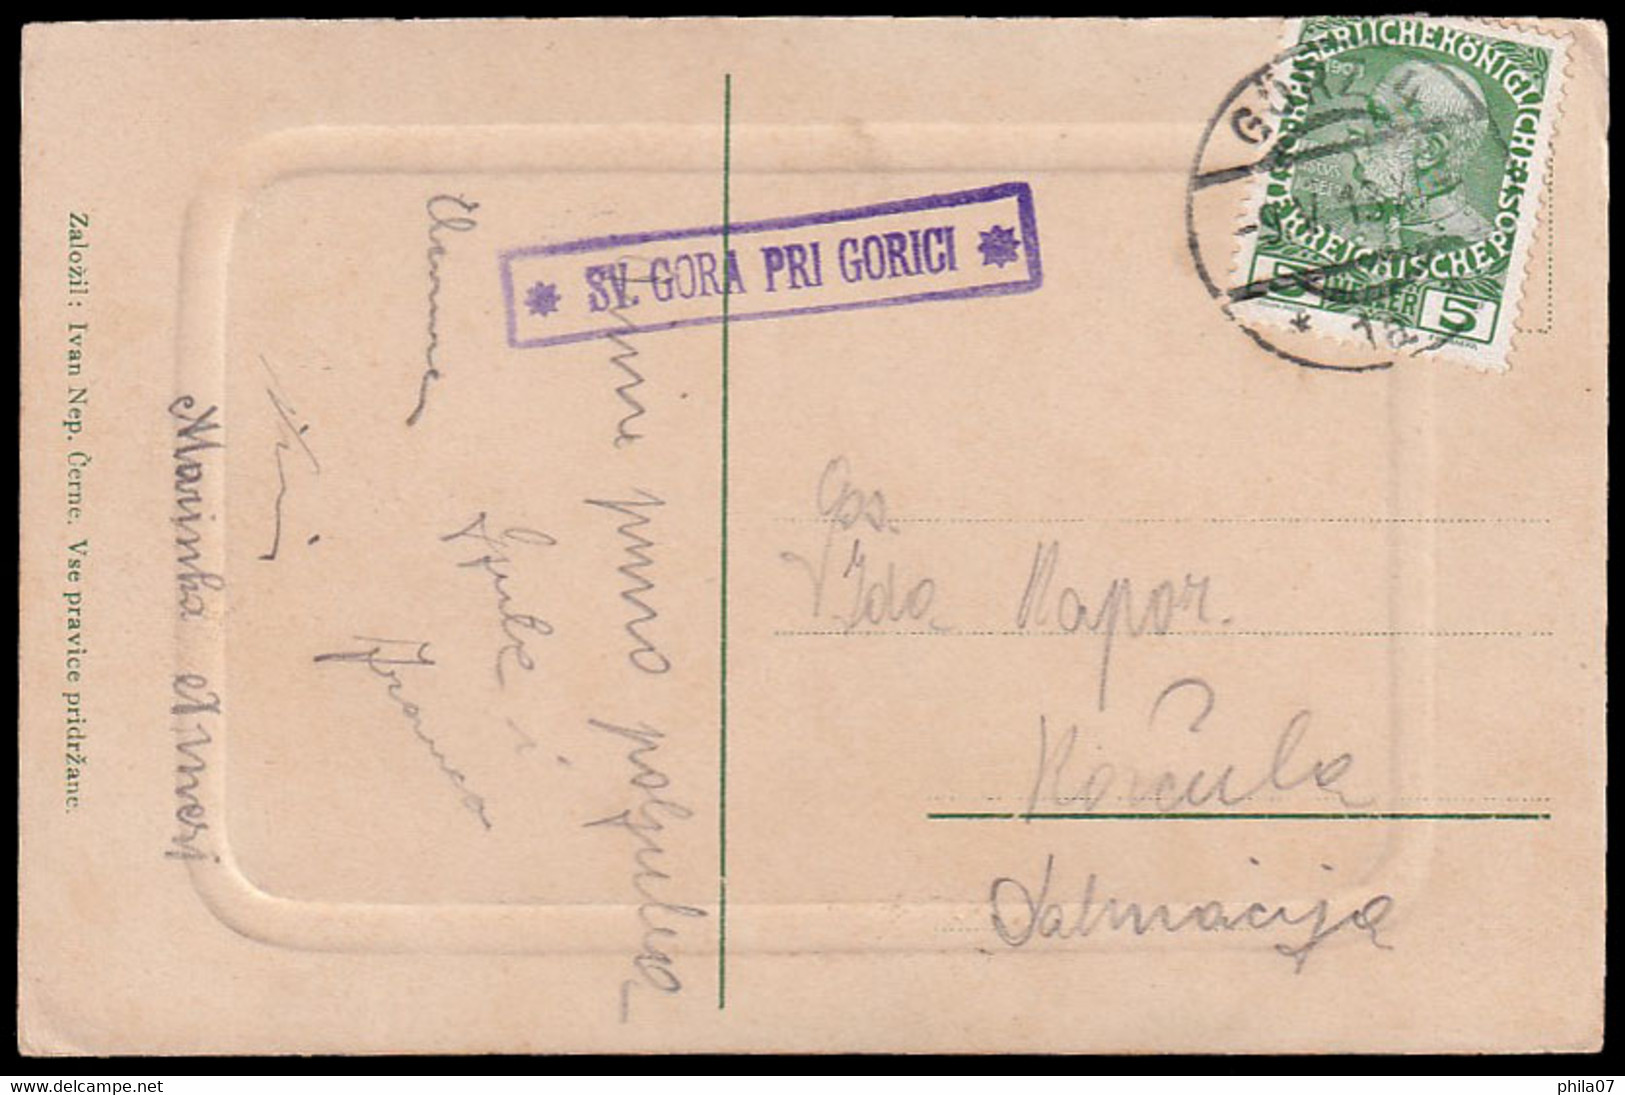 SLOVENIA - Postcard Of Sveta Gora Sent From Postal Agency Sv. Gora Pri Gorici To Korčula 09.05. 1913. / 2 Scans - Slovénie